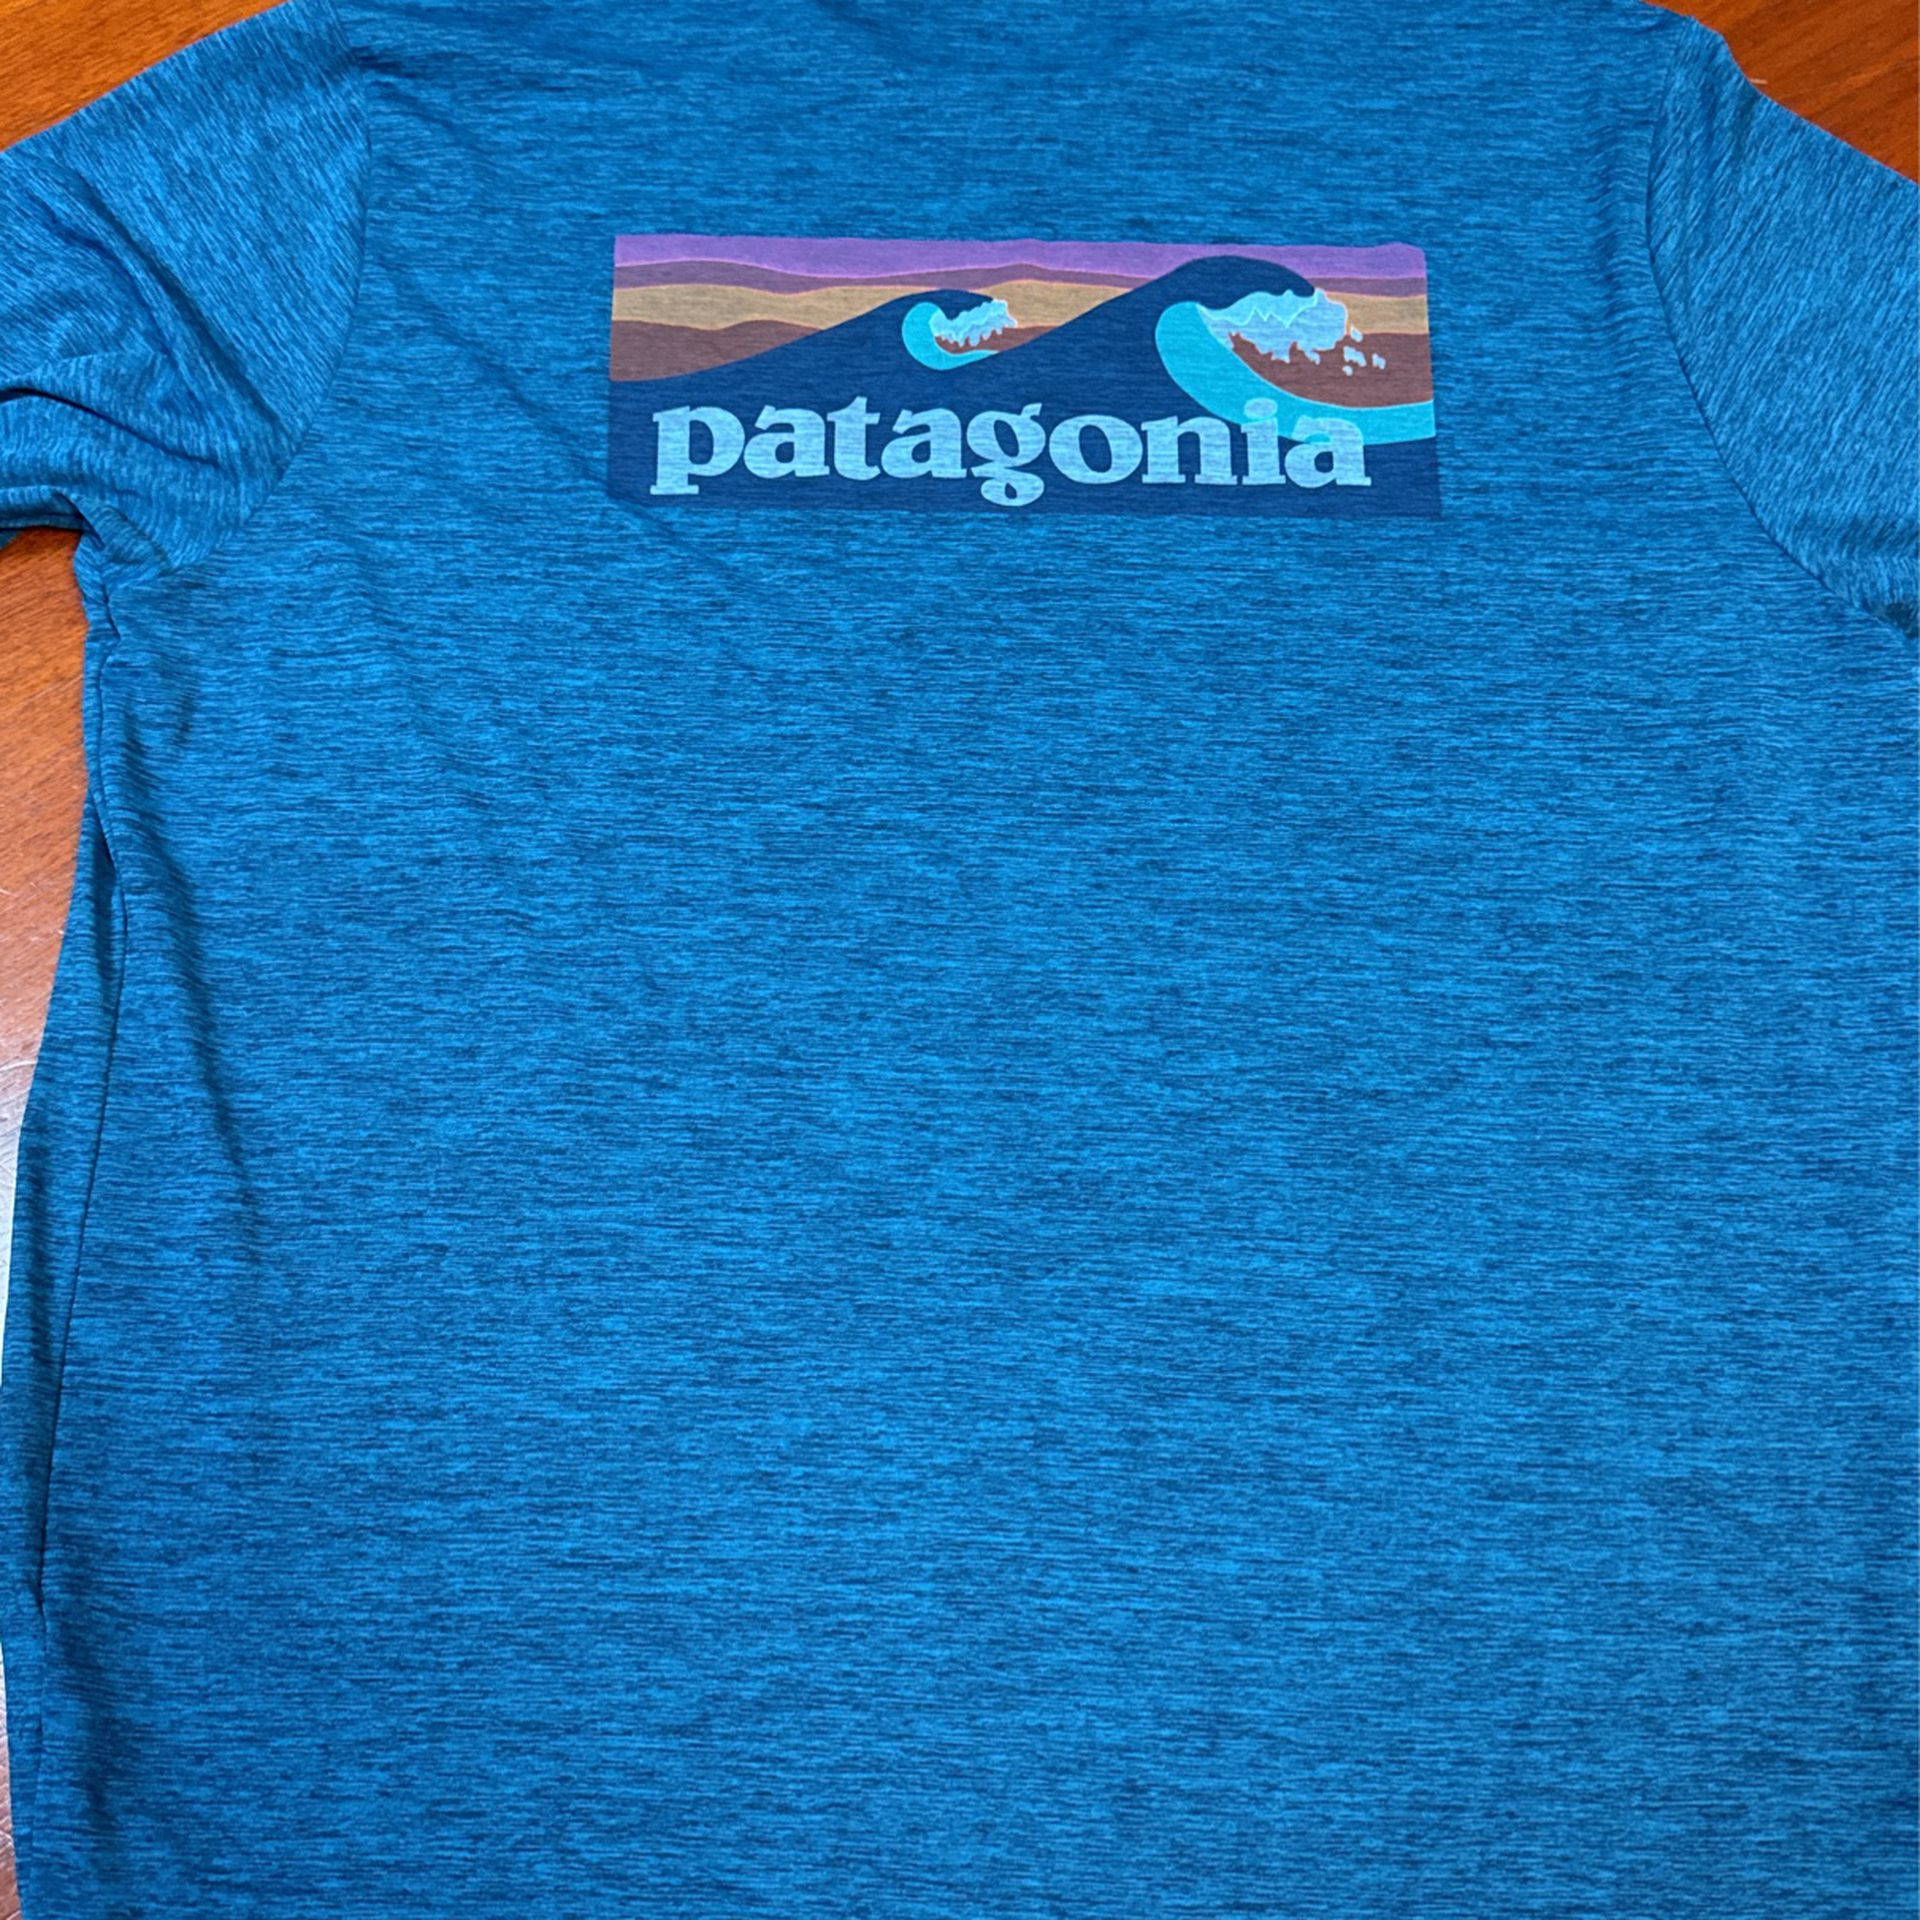 Patagonia Cool Long Sleeve Large Shirt 